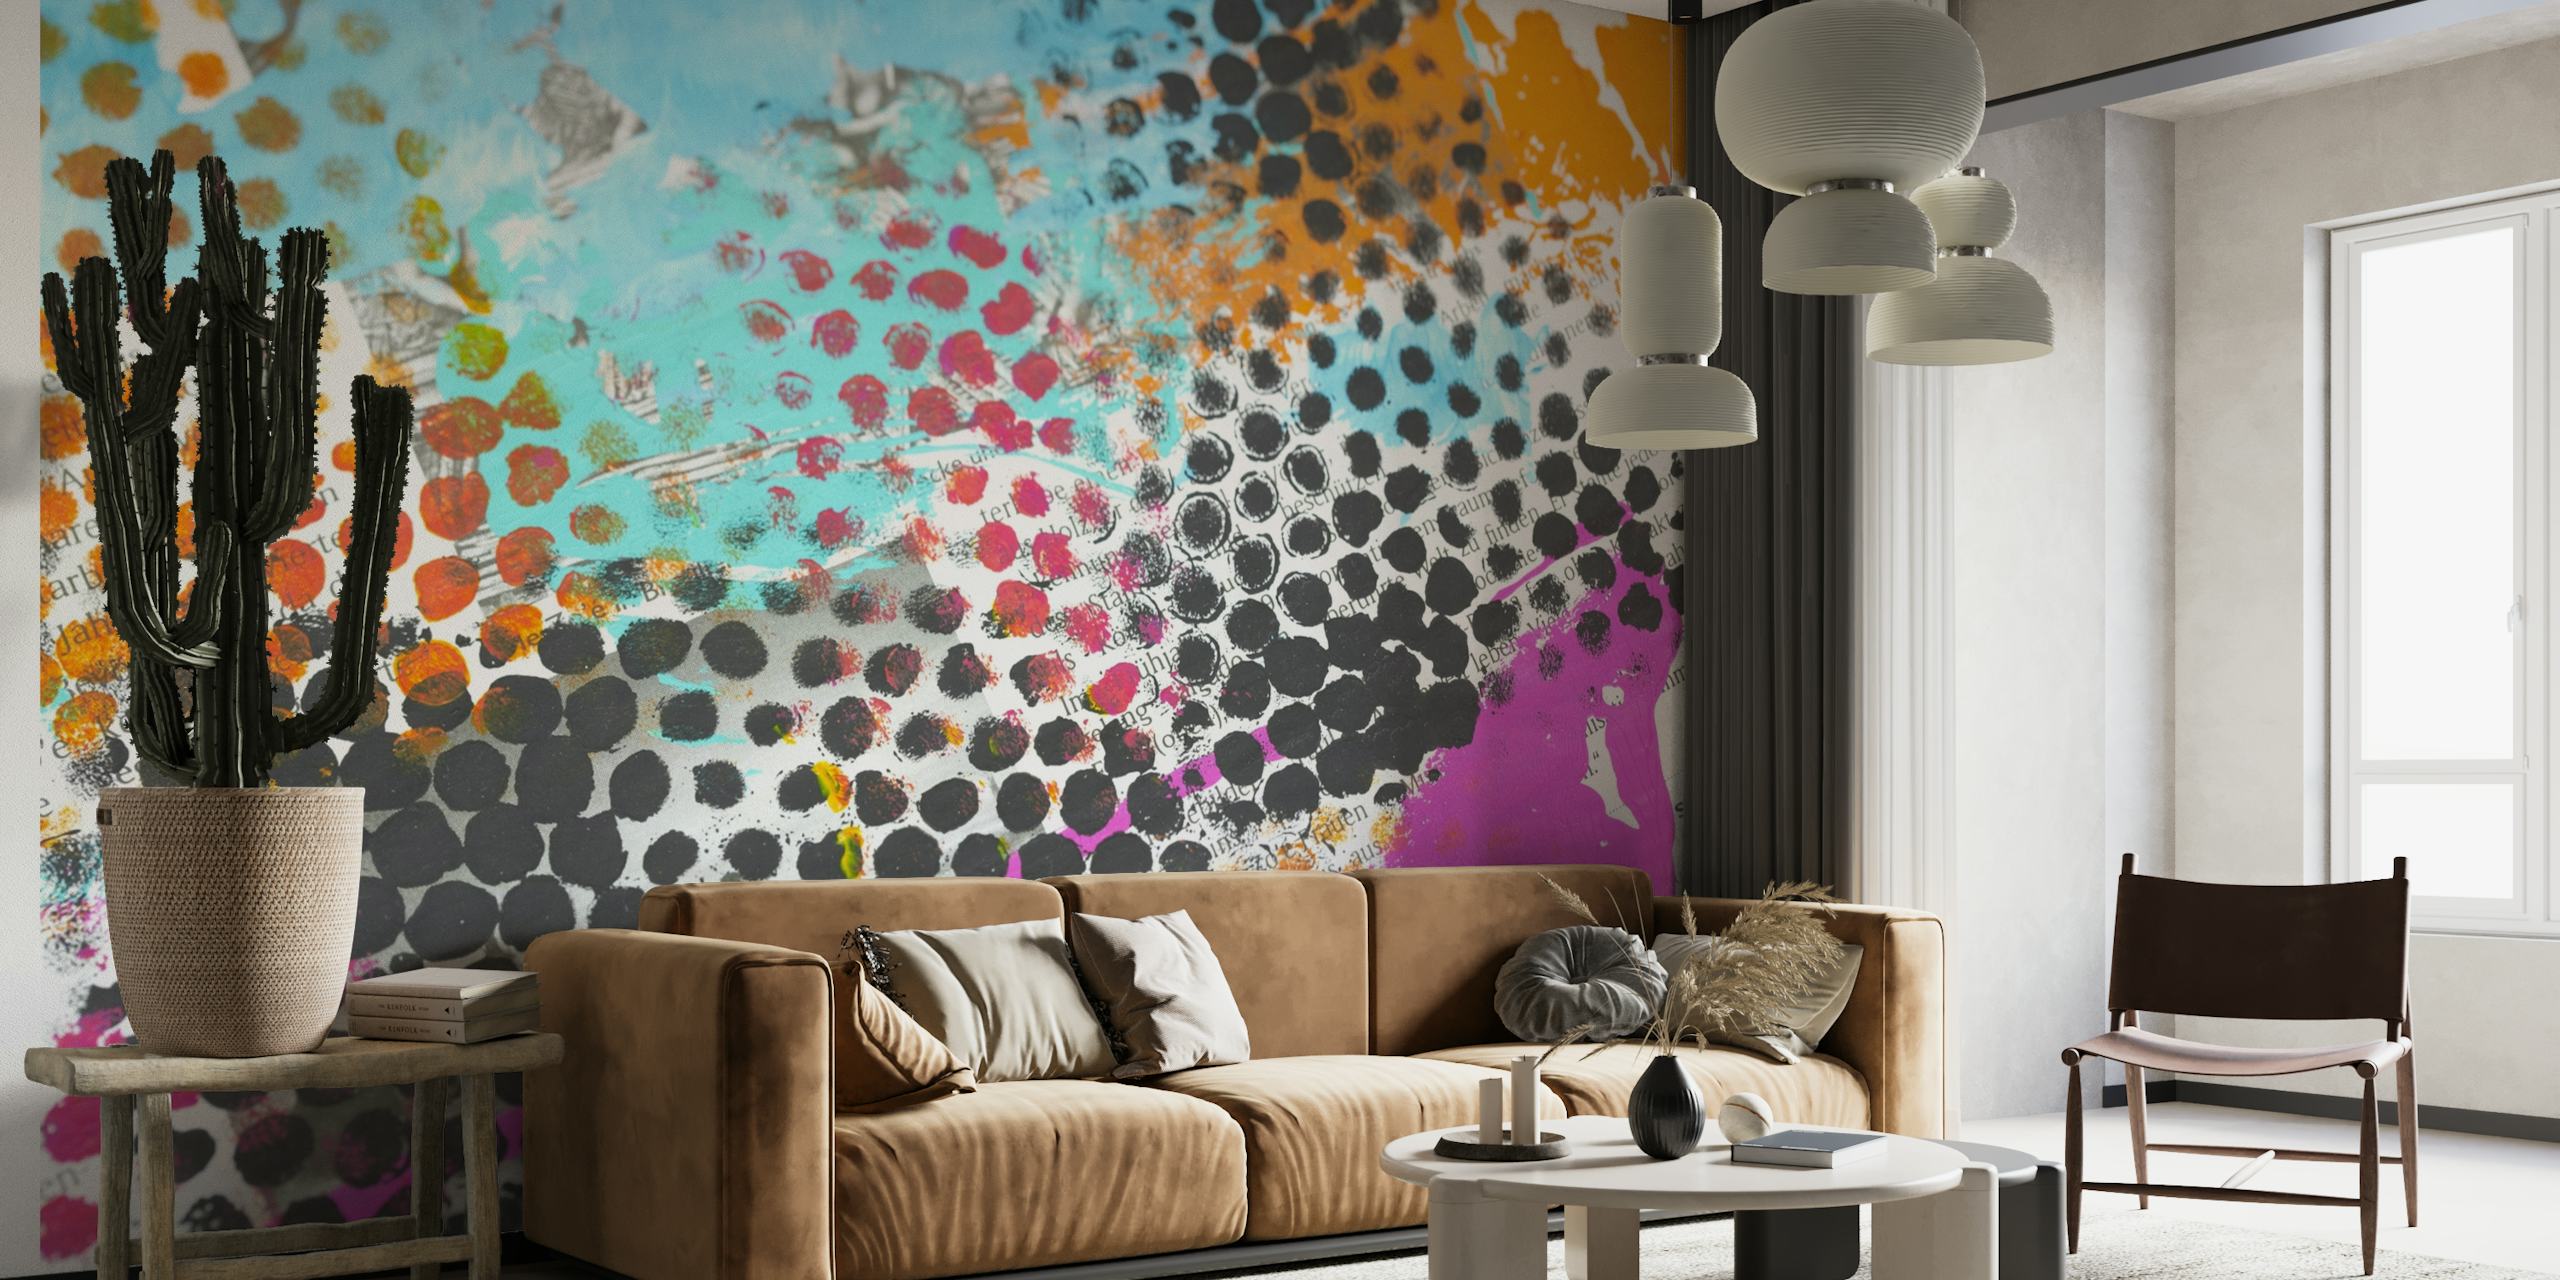 Farverigt vægmaleri i grunge-stil med prikkede mønstre og livlige farver